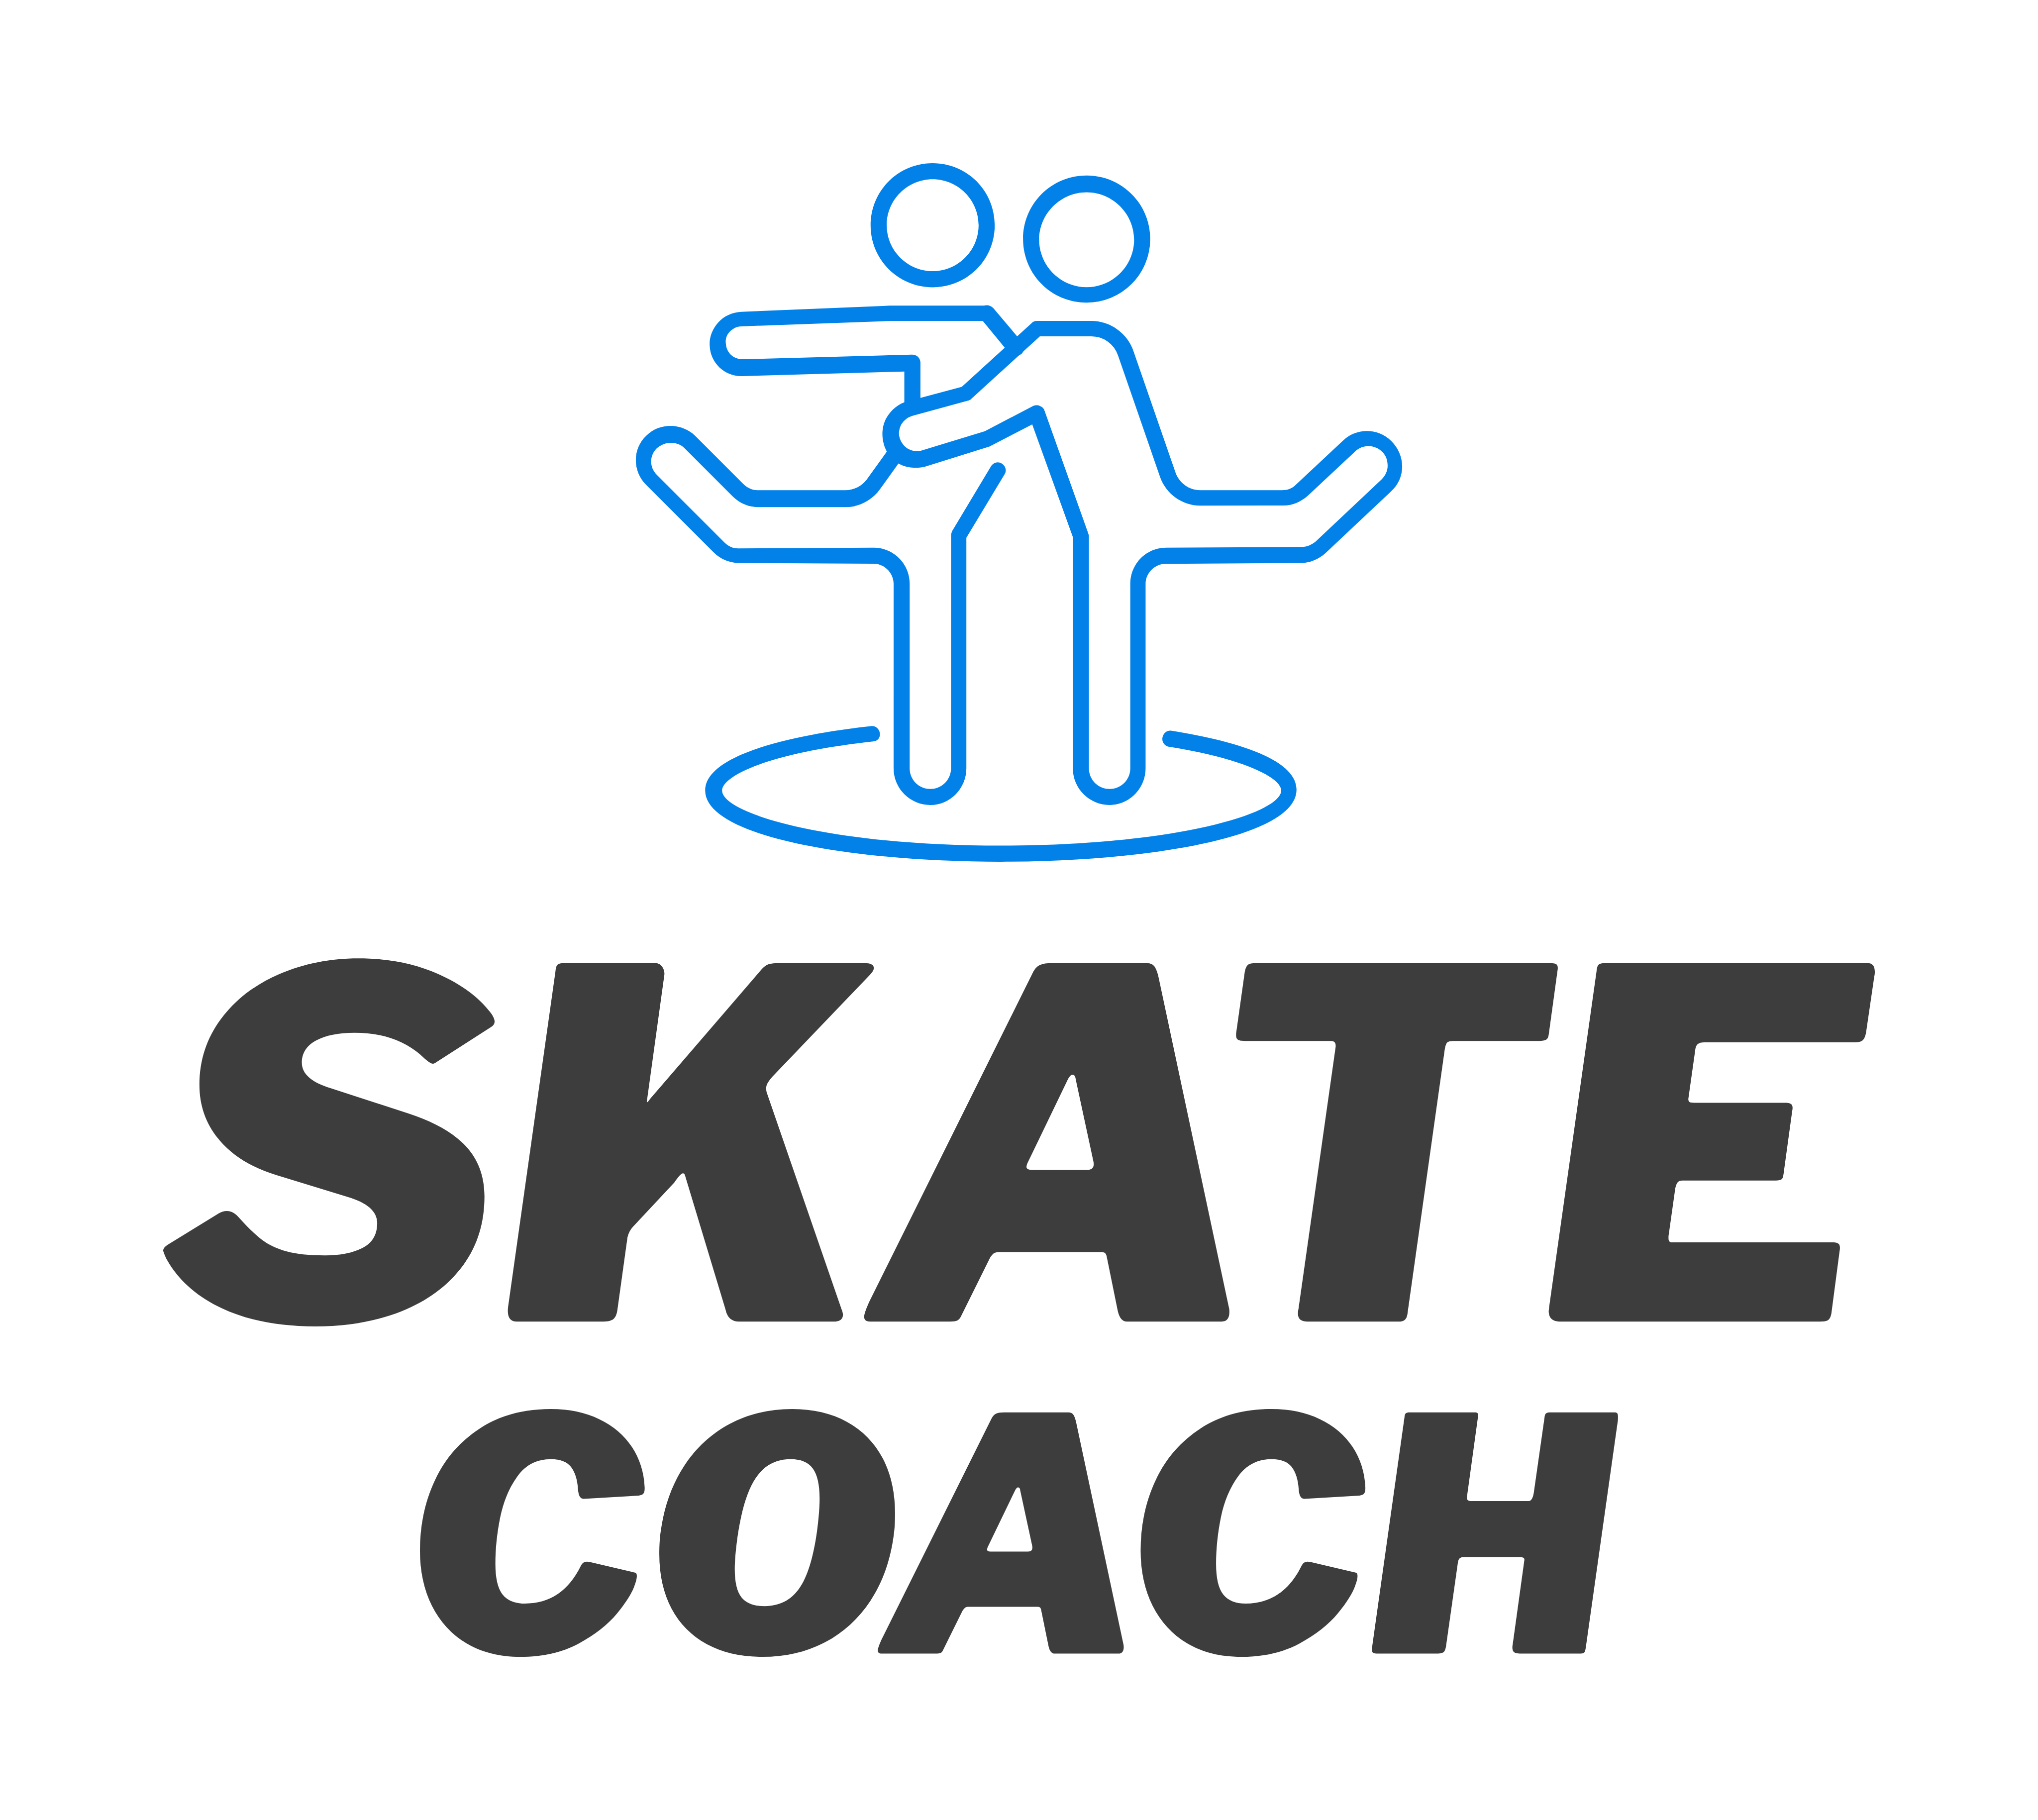 Skate Coach